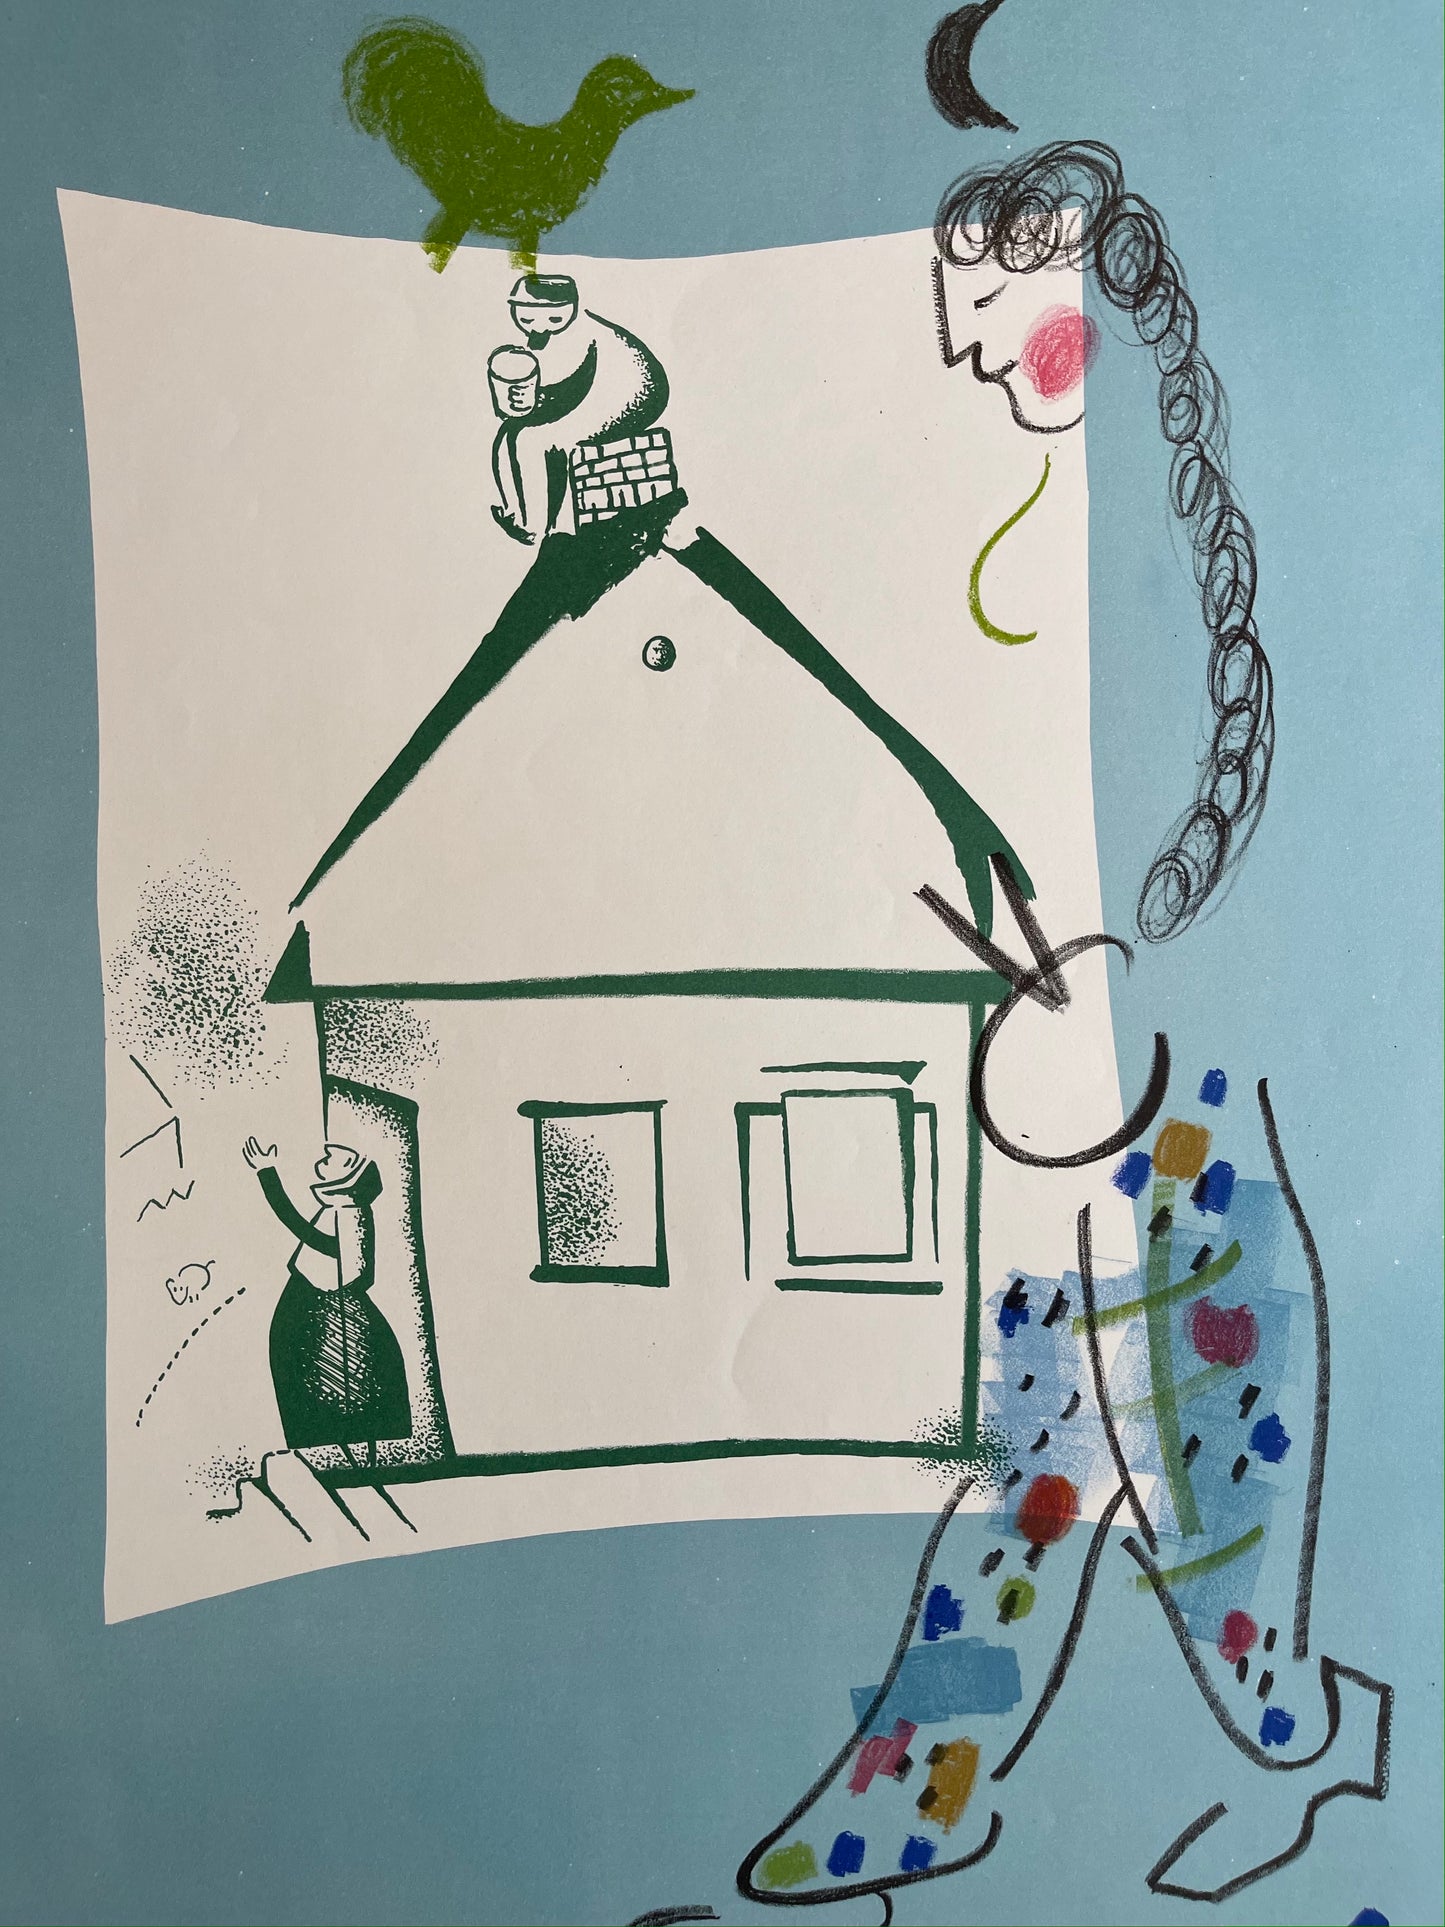 Marc Chagall Lithograph: "The House in My Village" (La Maison de mon Village), 1969